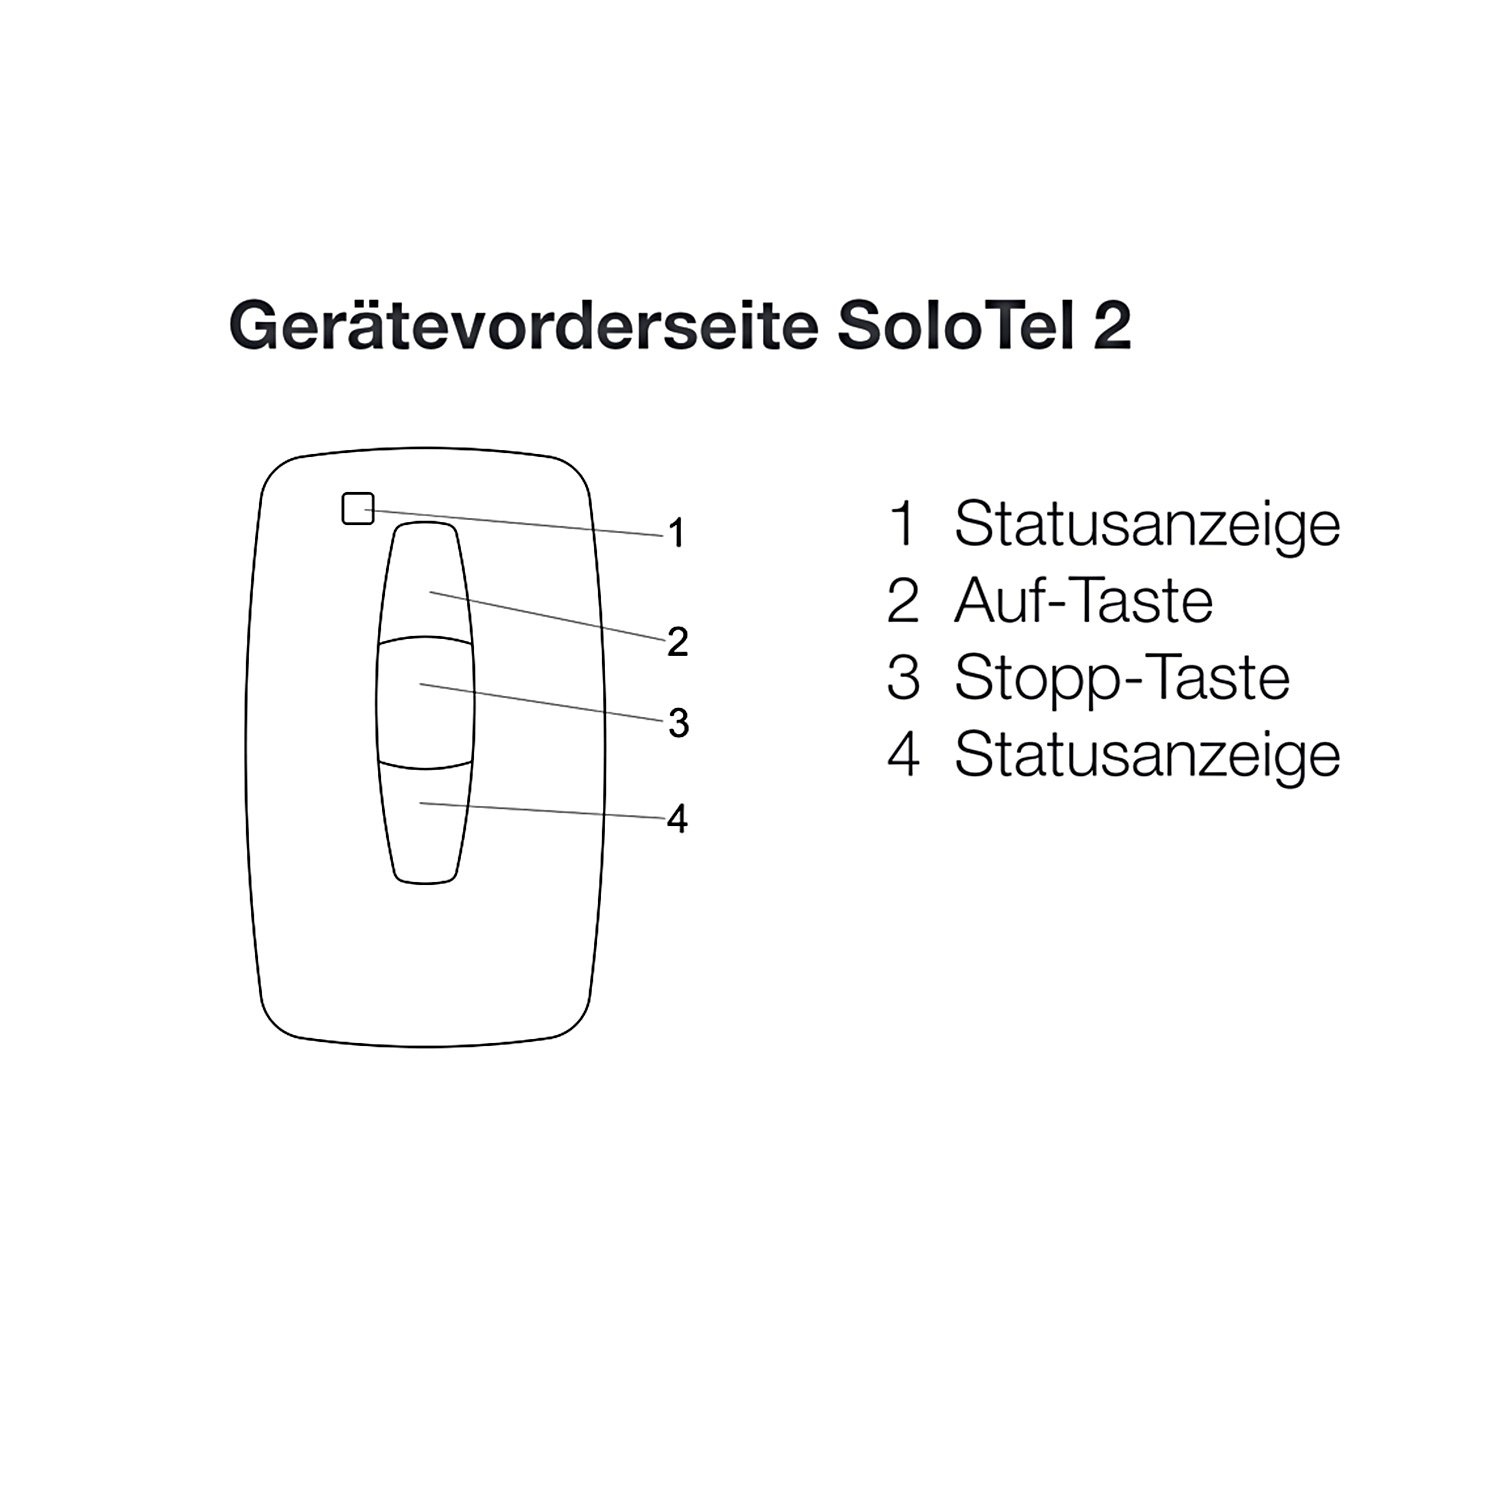 elero SoloTel 2, Wand-/ Handsender, Schwarz